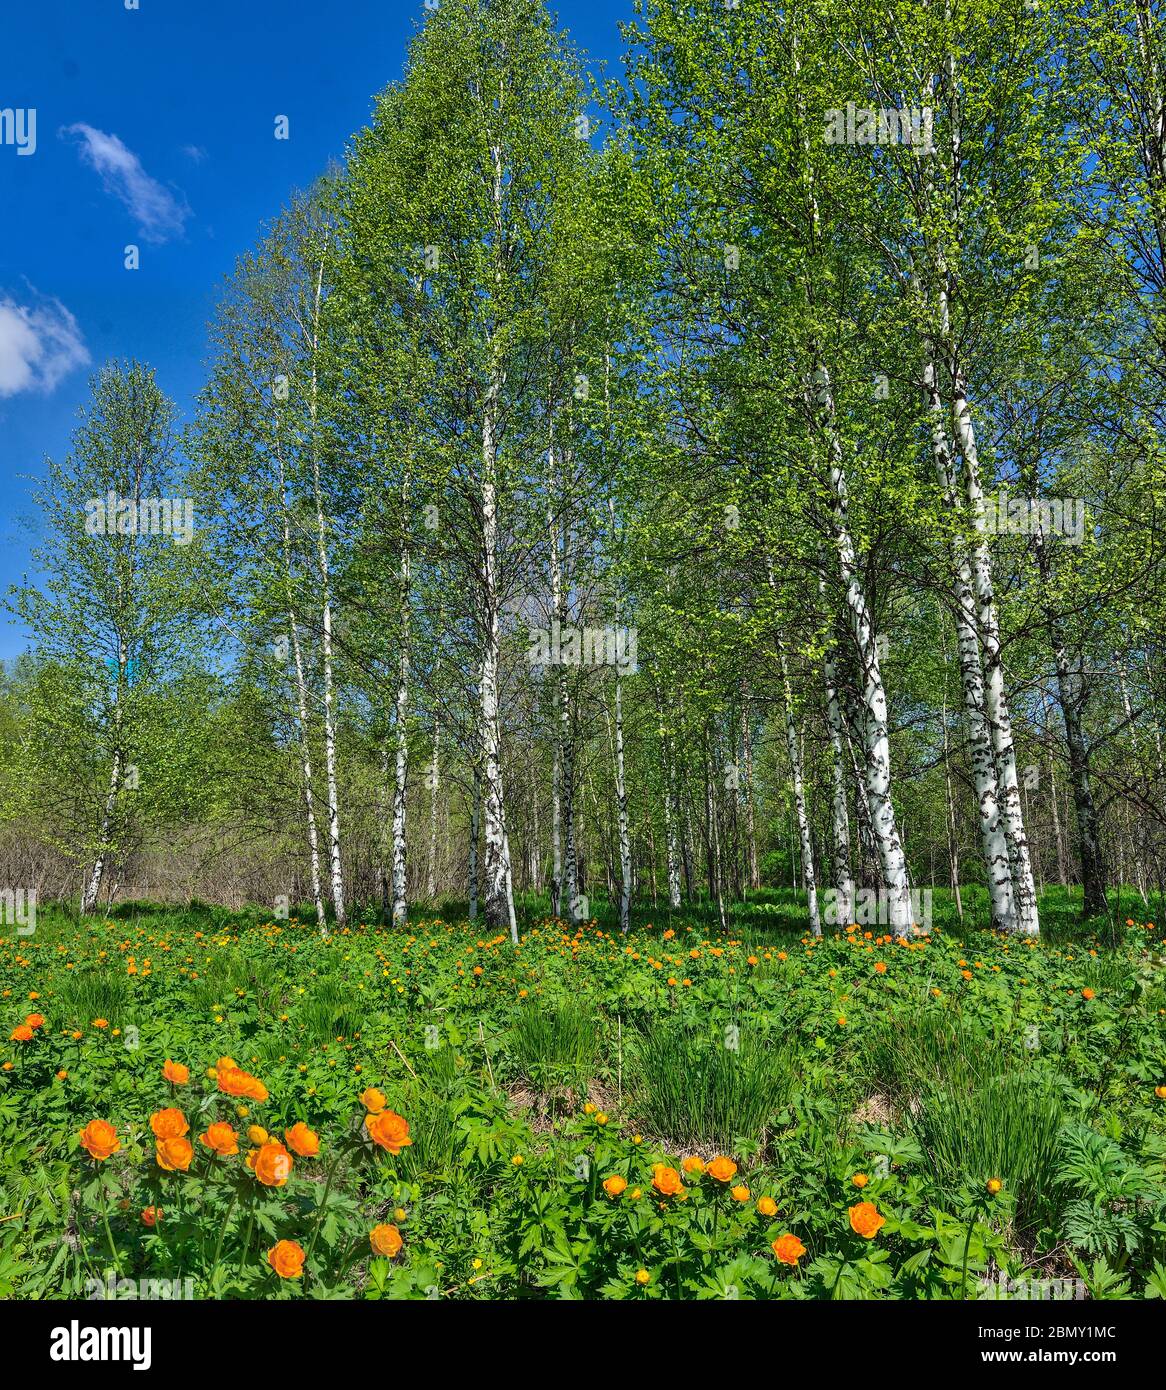 Glade à fleurs d'orange trollius asioticus ou globe-fleurs dans la forêt de bouleau de printemps. Paysage de printemps ensoleillé et lumineux avec de magnifiques fleurs de fleur sauvage Banque D'Images